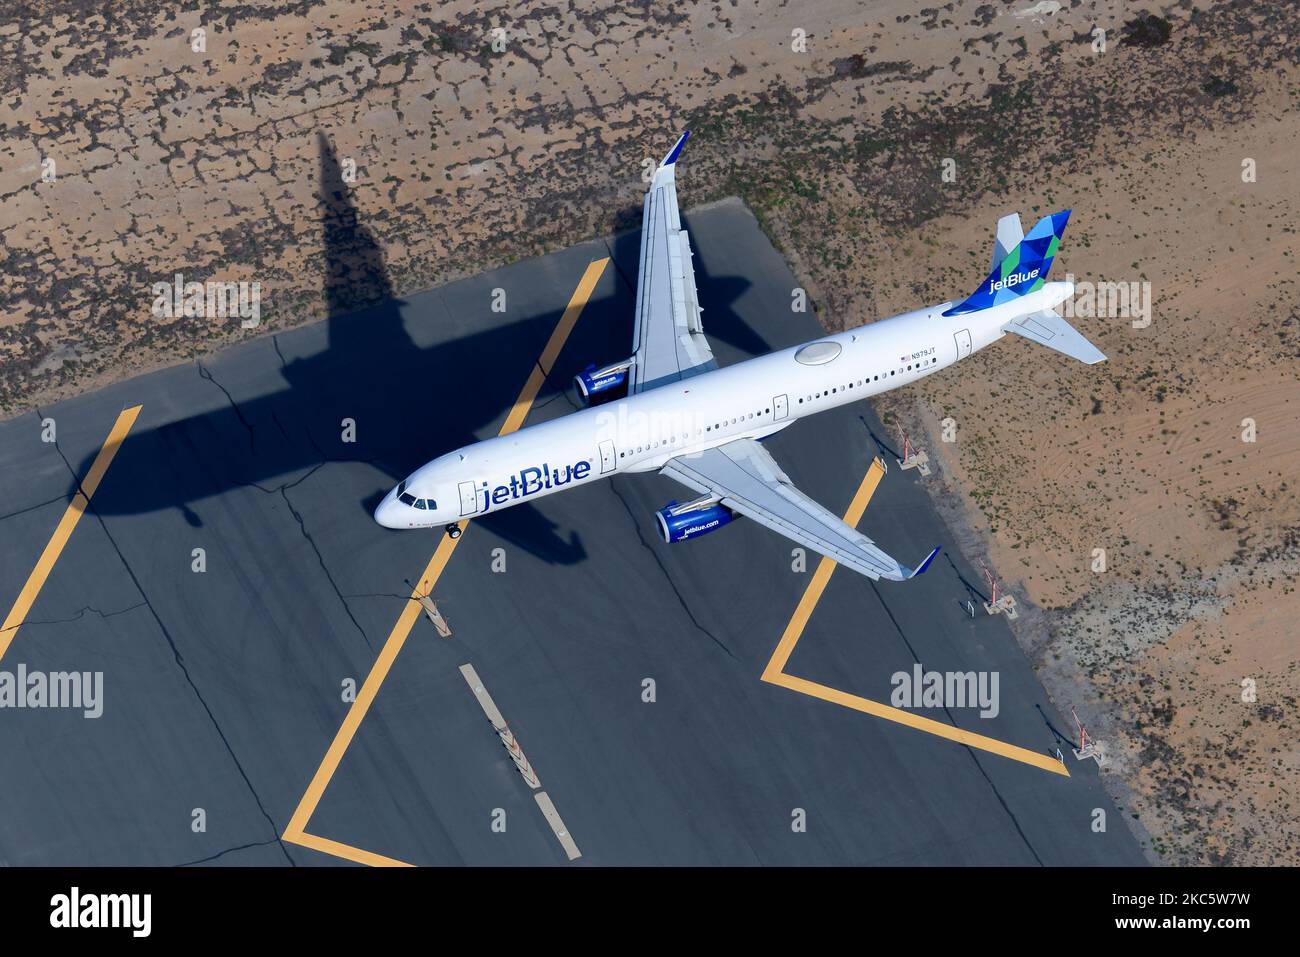 JetBlue Airbus A321-Flugzeuge landen auf der Start- und Landebahn. Das Flugzeug A321 der Jet Blue Airline registrierte sich als N979JT, das über die Landebahn-Chevrons flog. Stockfoto